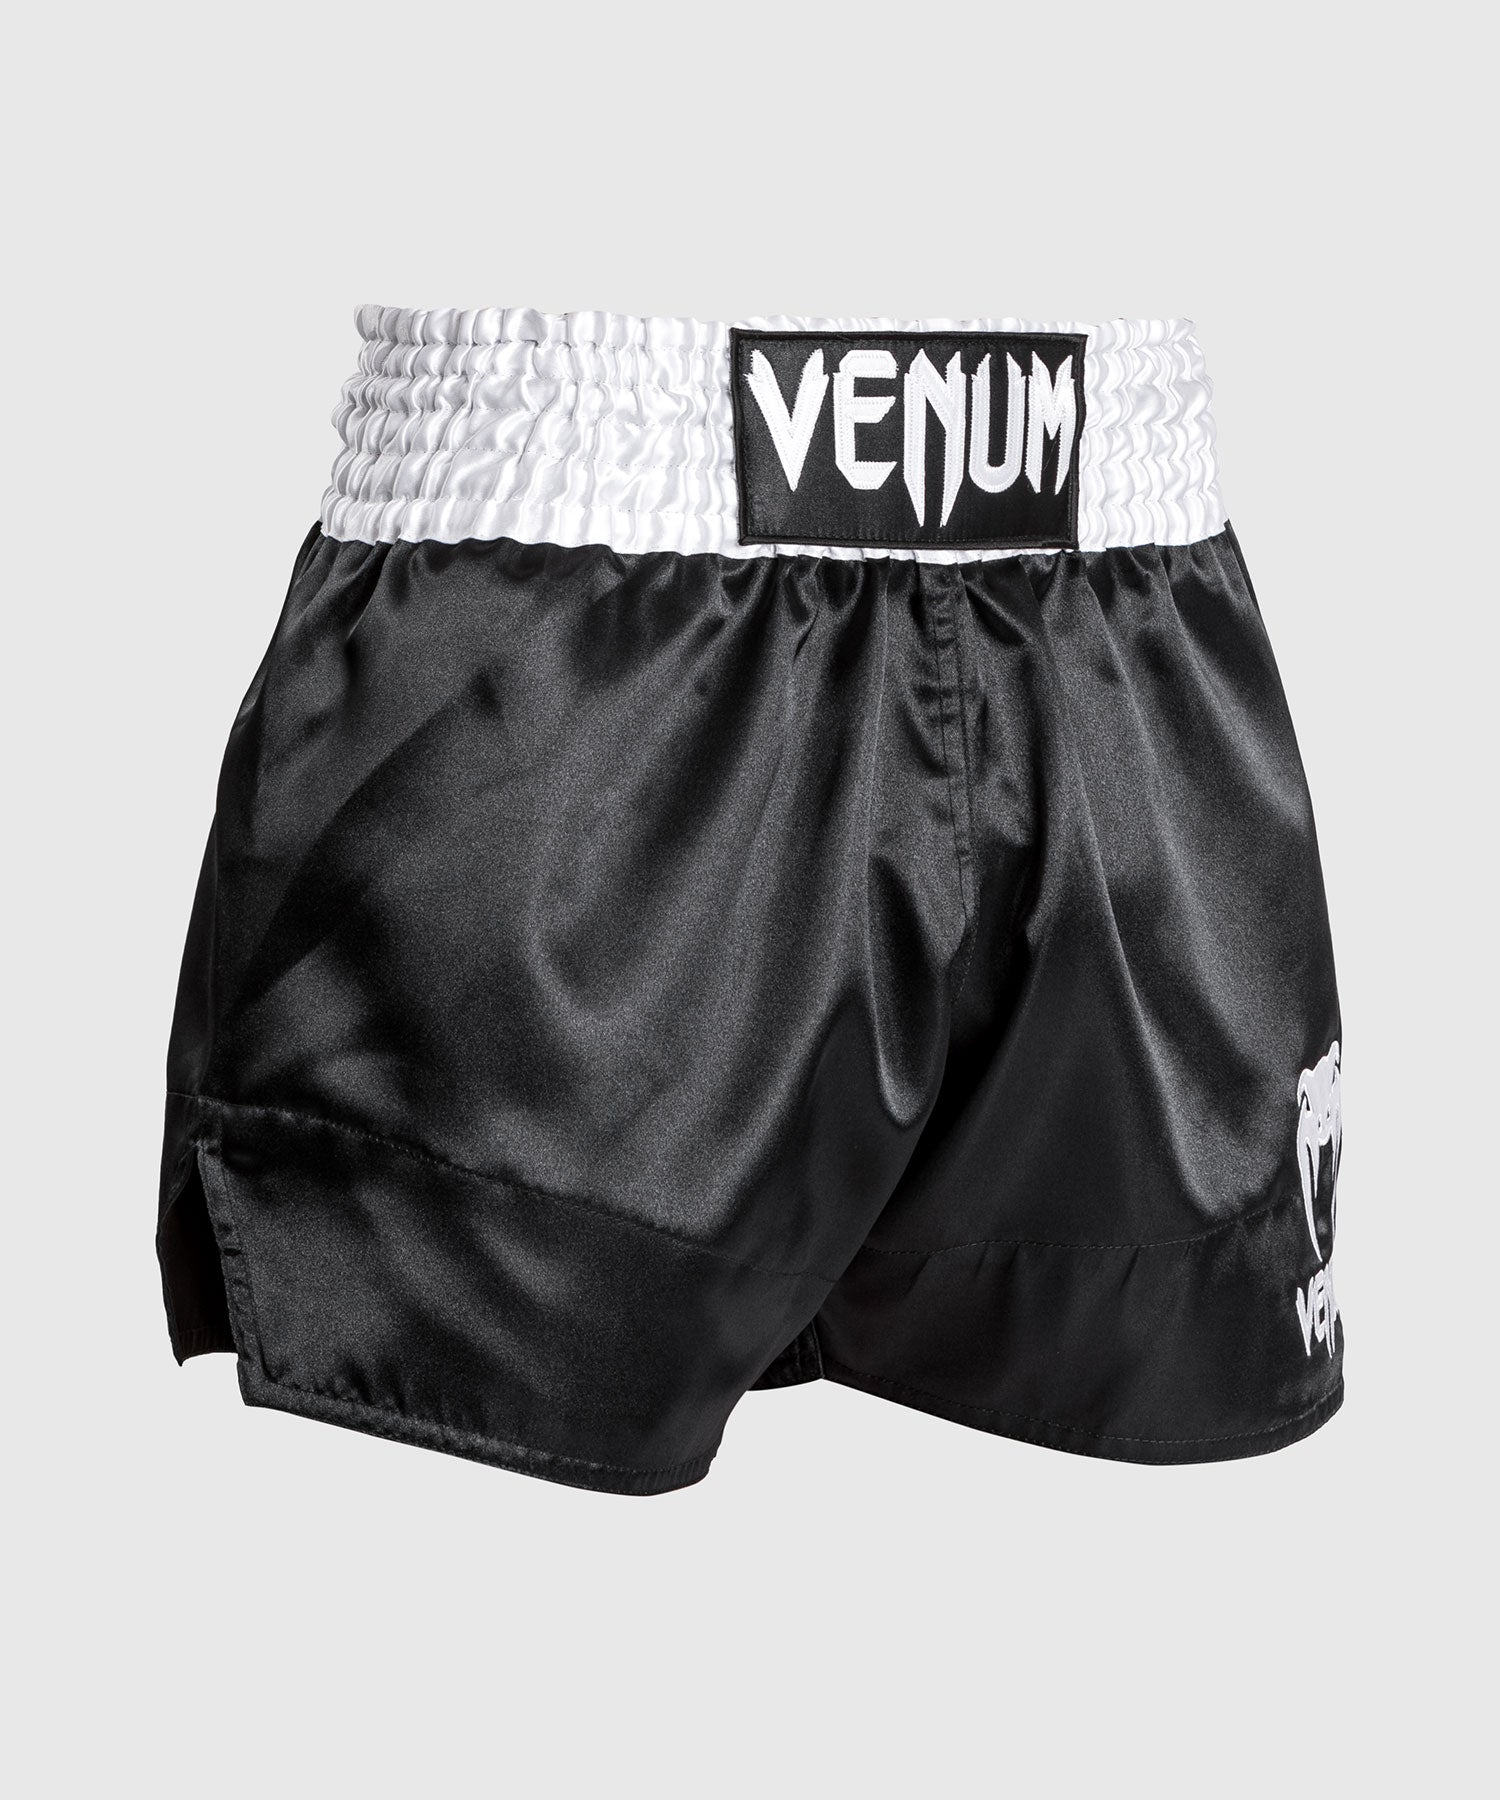 Venum Classic - Muay Thai Short Black/White/White - Venum